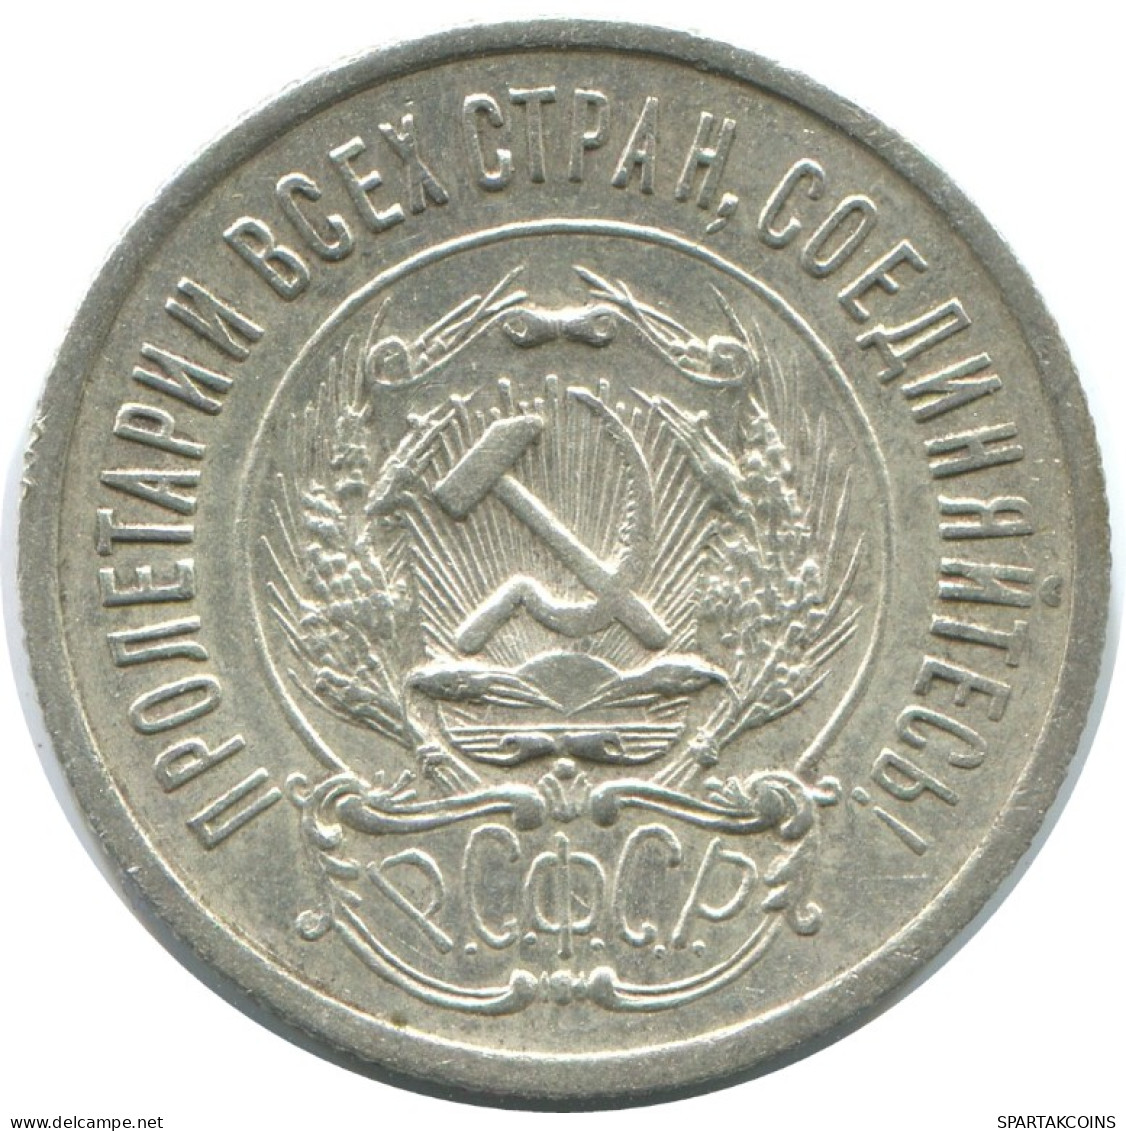 20 KOPEKS 1923 RUSSIA RSFSR SILVER Coin HIGH GRADE #AF445.4.U.A - Russland